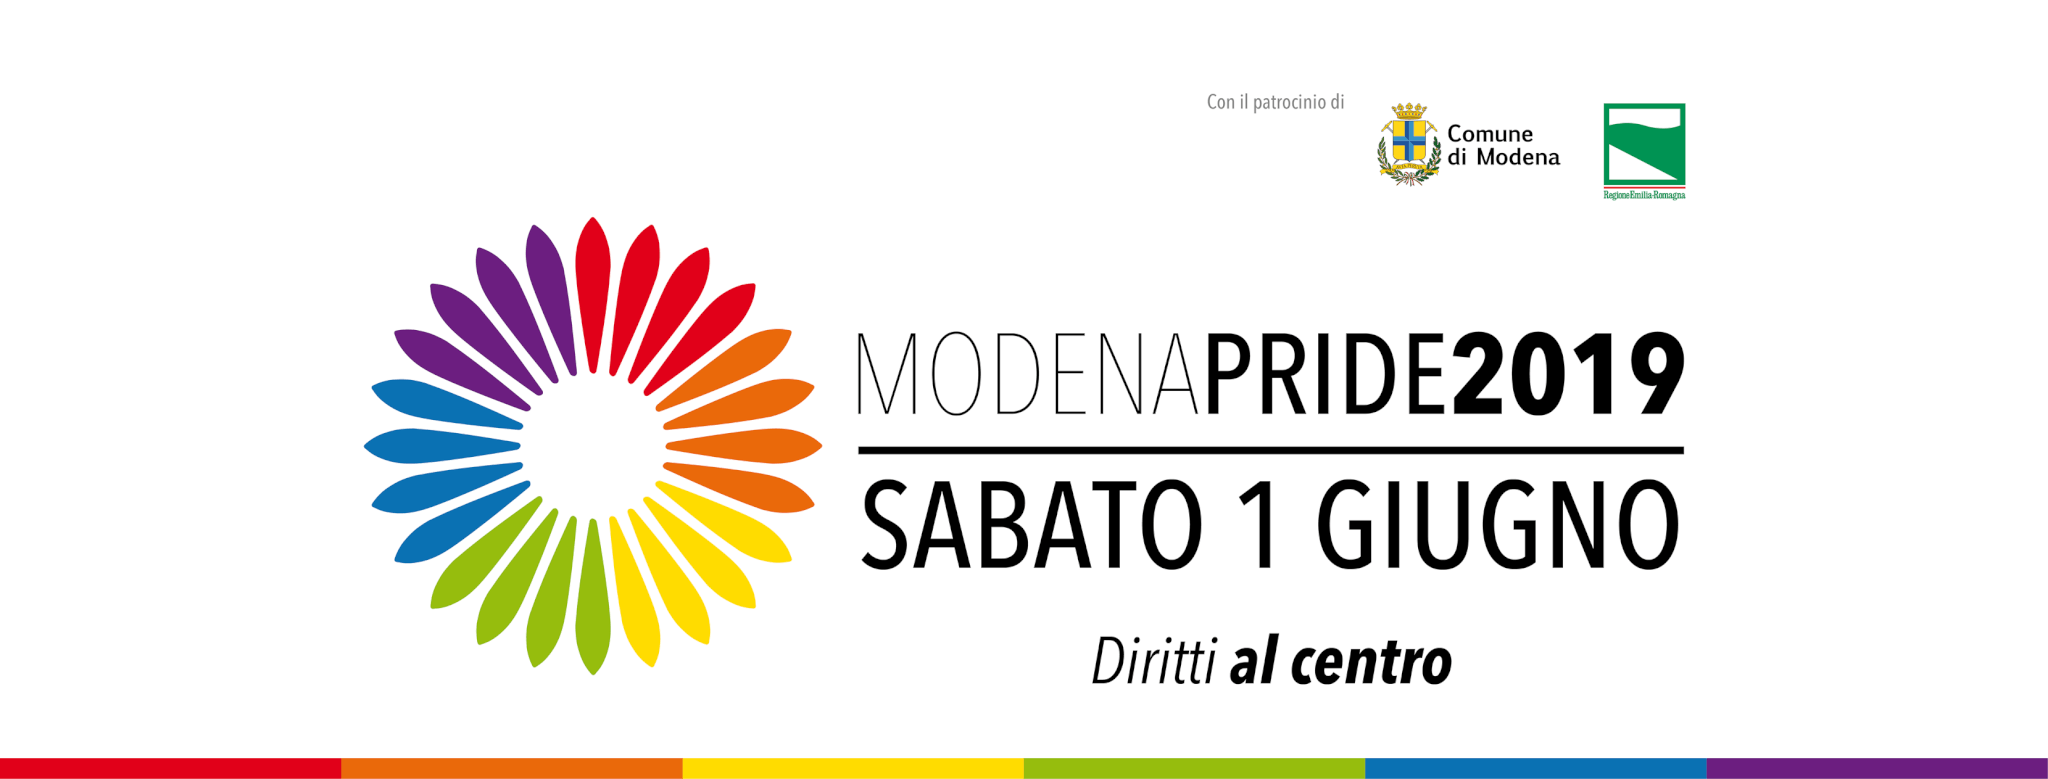 Onda Pride 2019: è il giorno di Modena, Salerno, Alessandria, Perugia e Padova - Modena - Gay.it